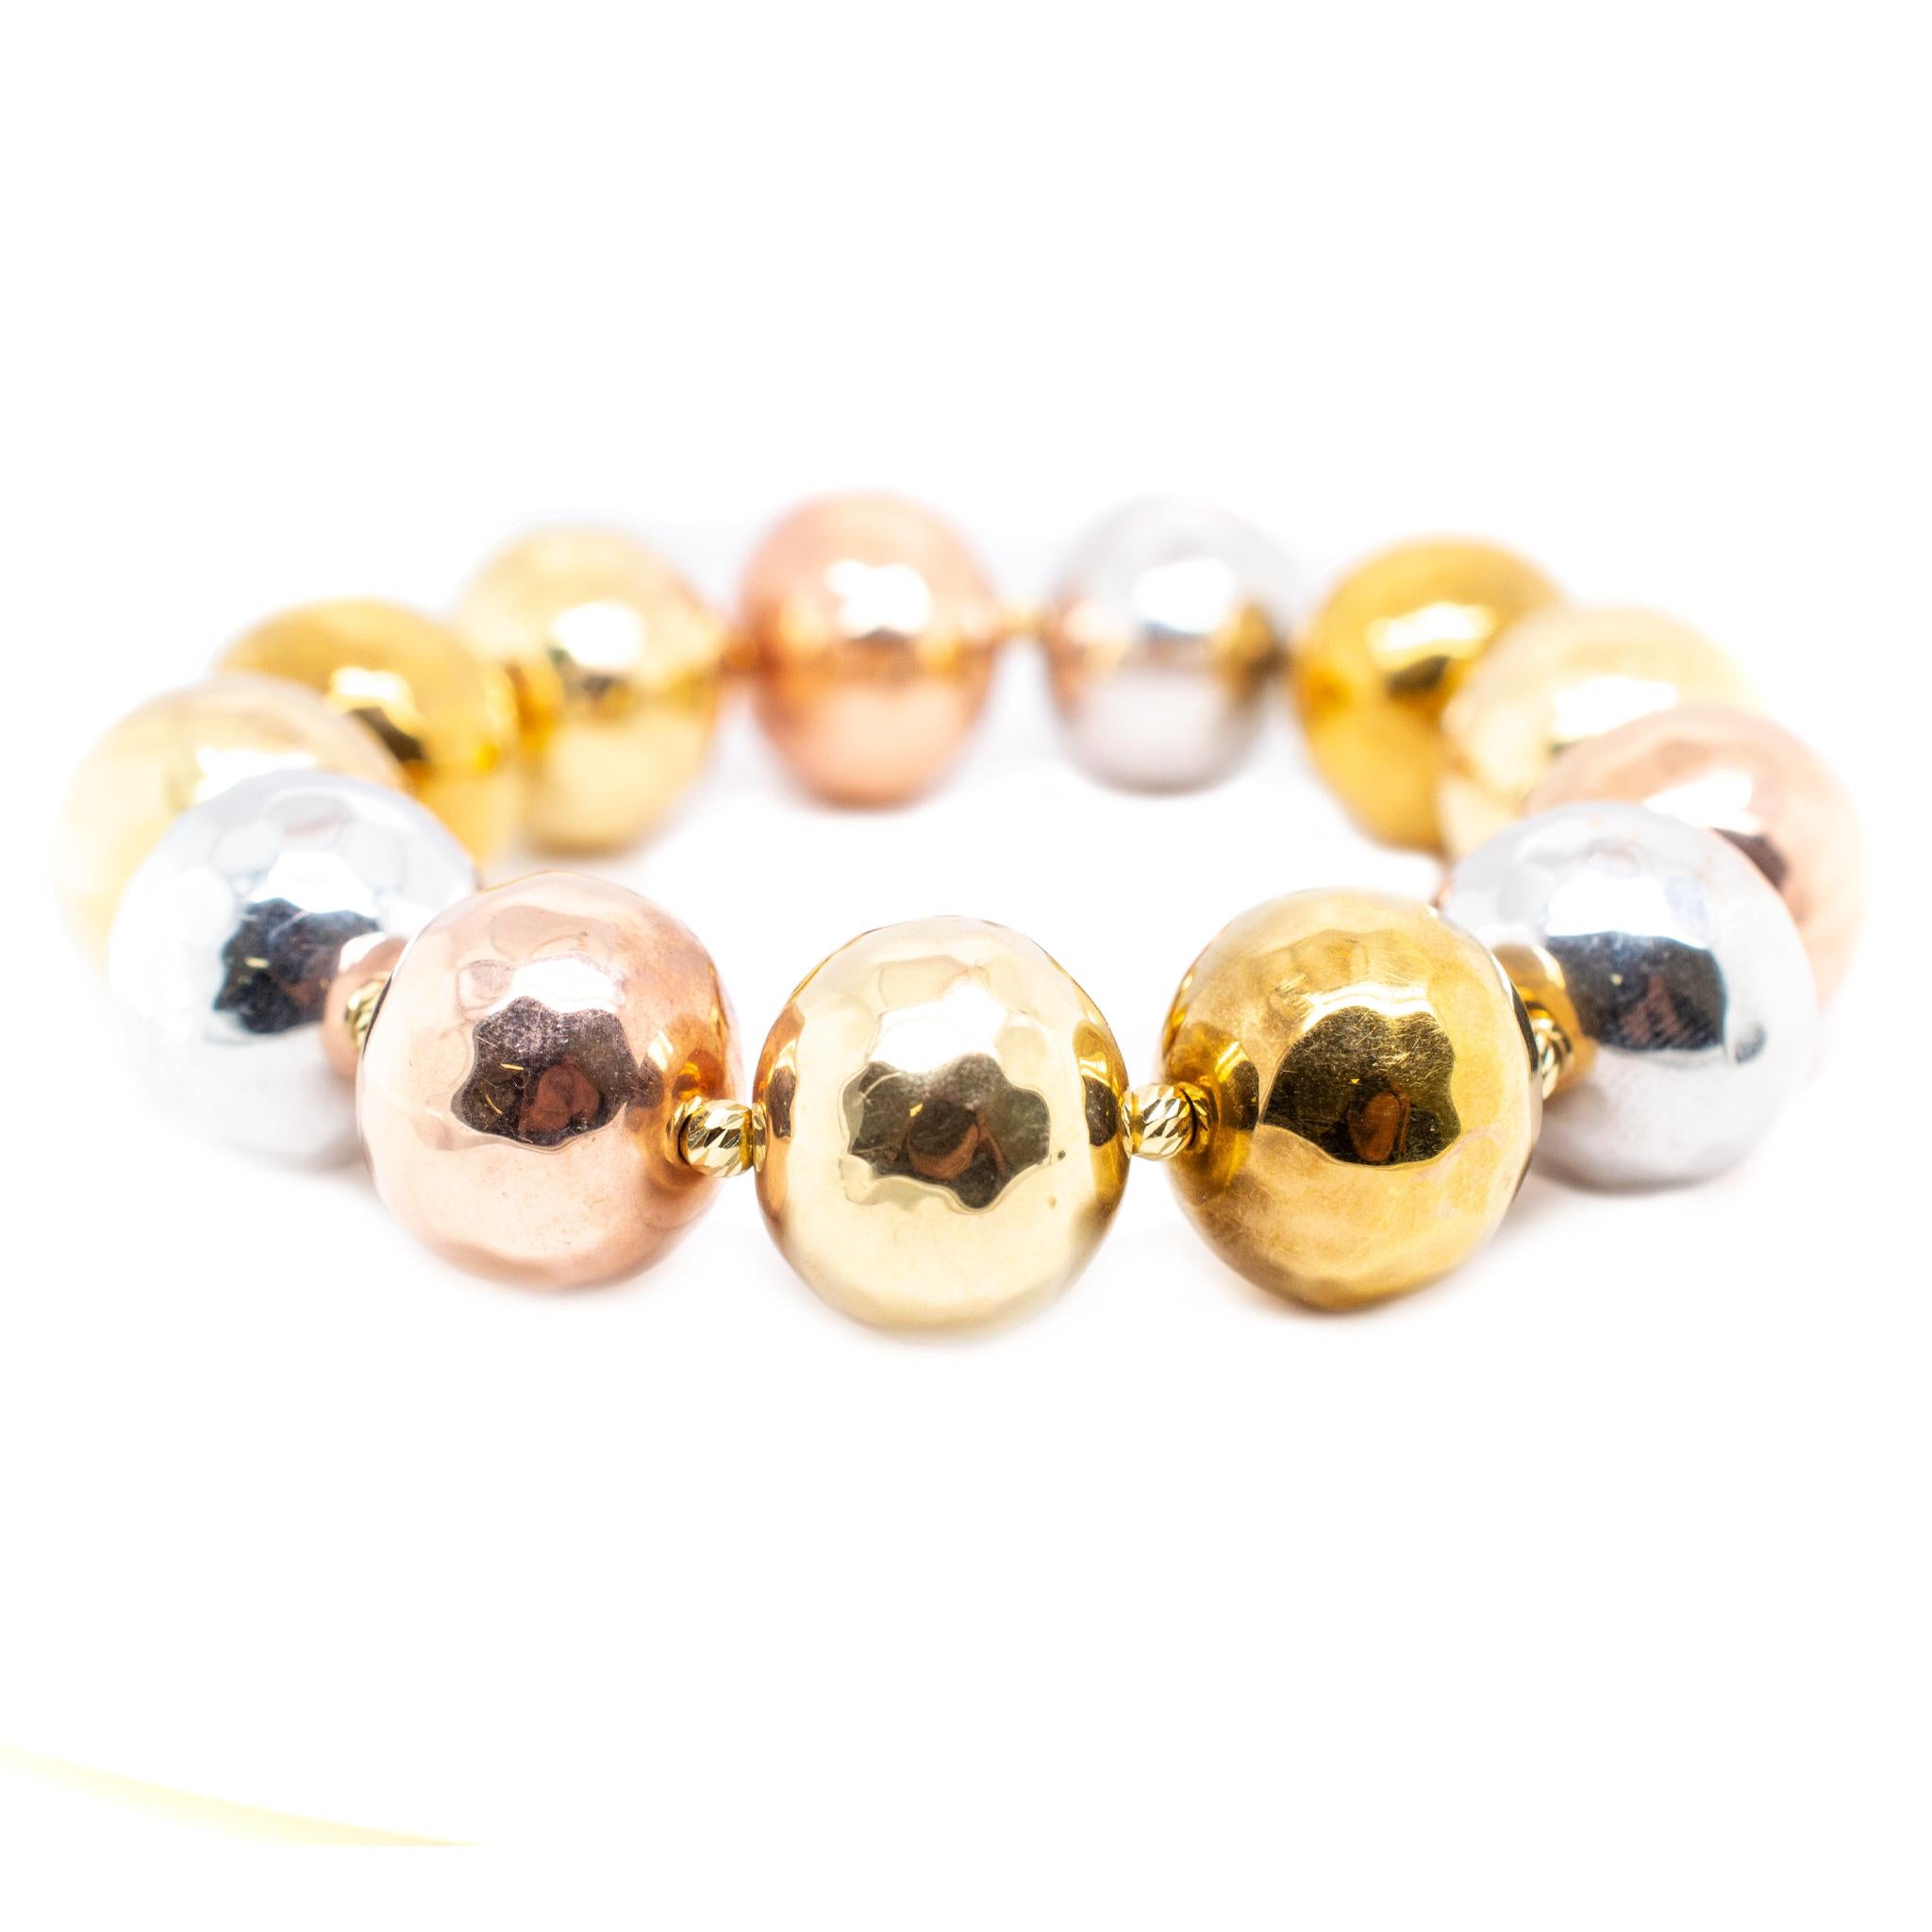 Un bracelet de perles en or tricolore 18K poli, fait sur mesure pour une dame. Le bracelet mesure environ 6,50 pouces de long par 16,50 mm de diamètre et pèse au total 19,20 grammes. En parfait état.

SKU : 138865